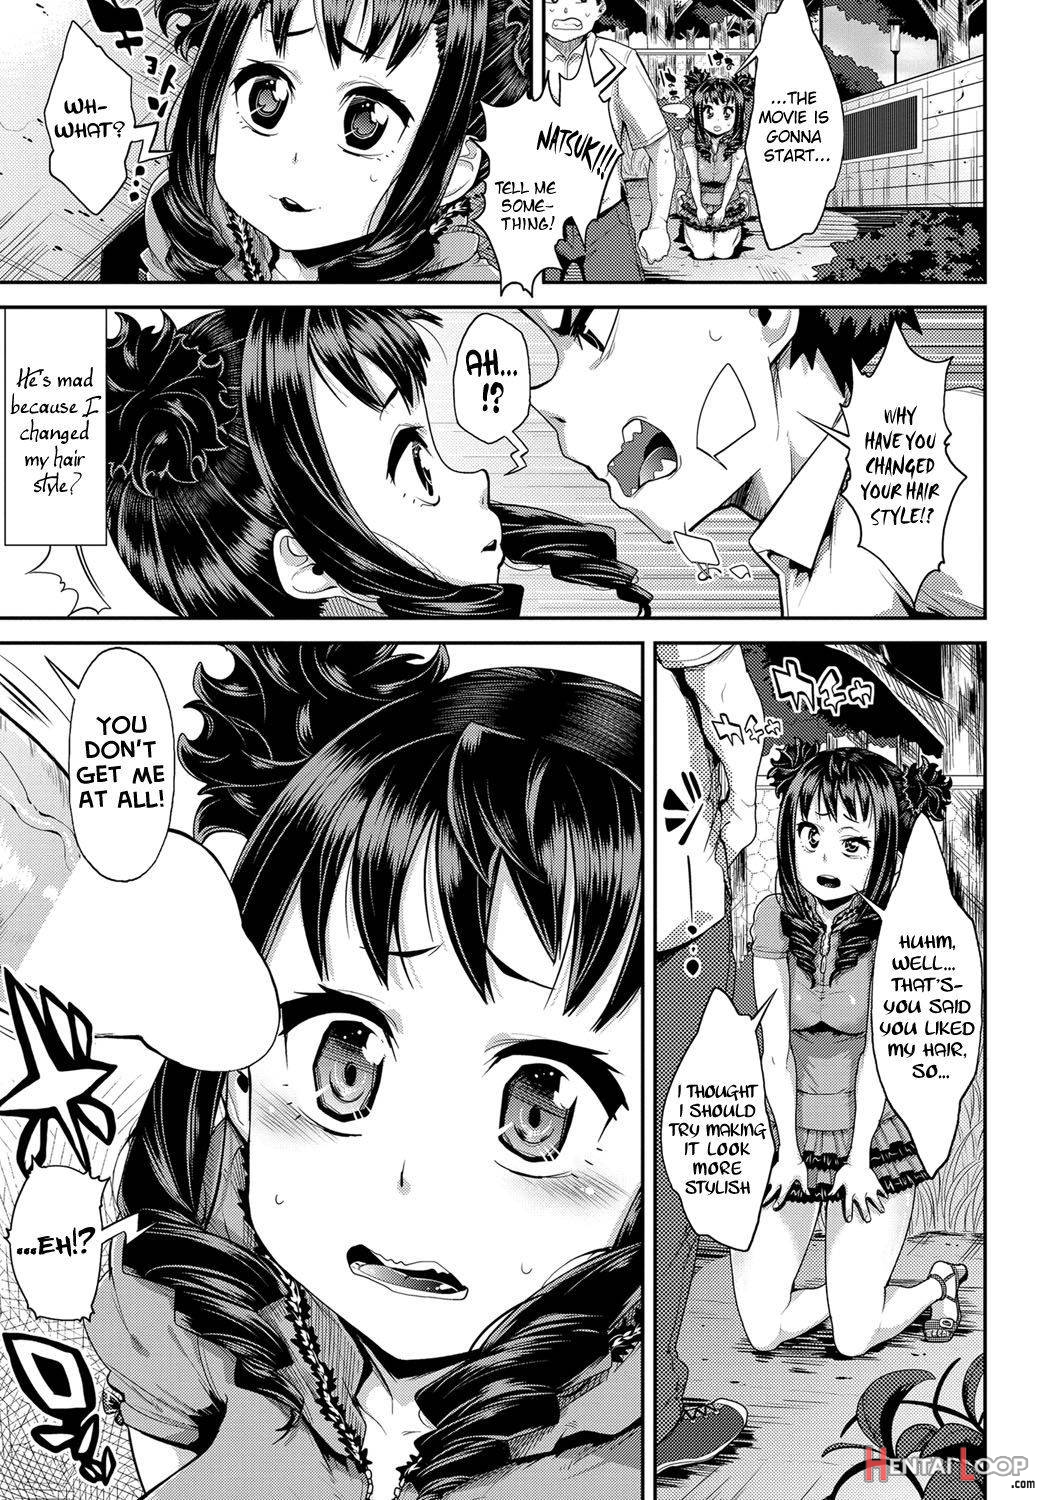 Shuseibun Wa Kami page 3